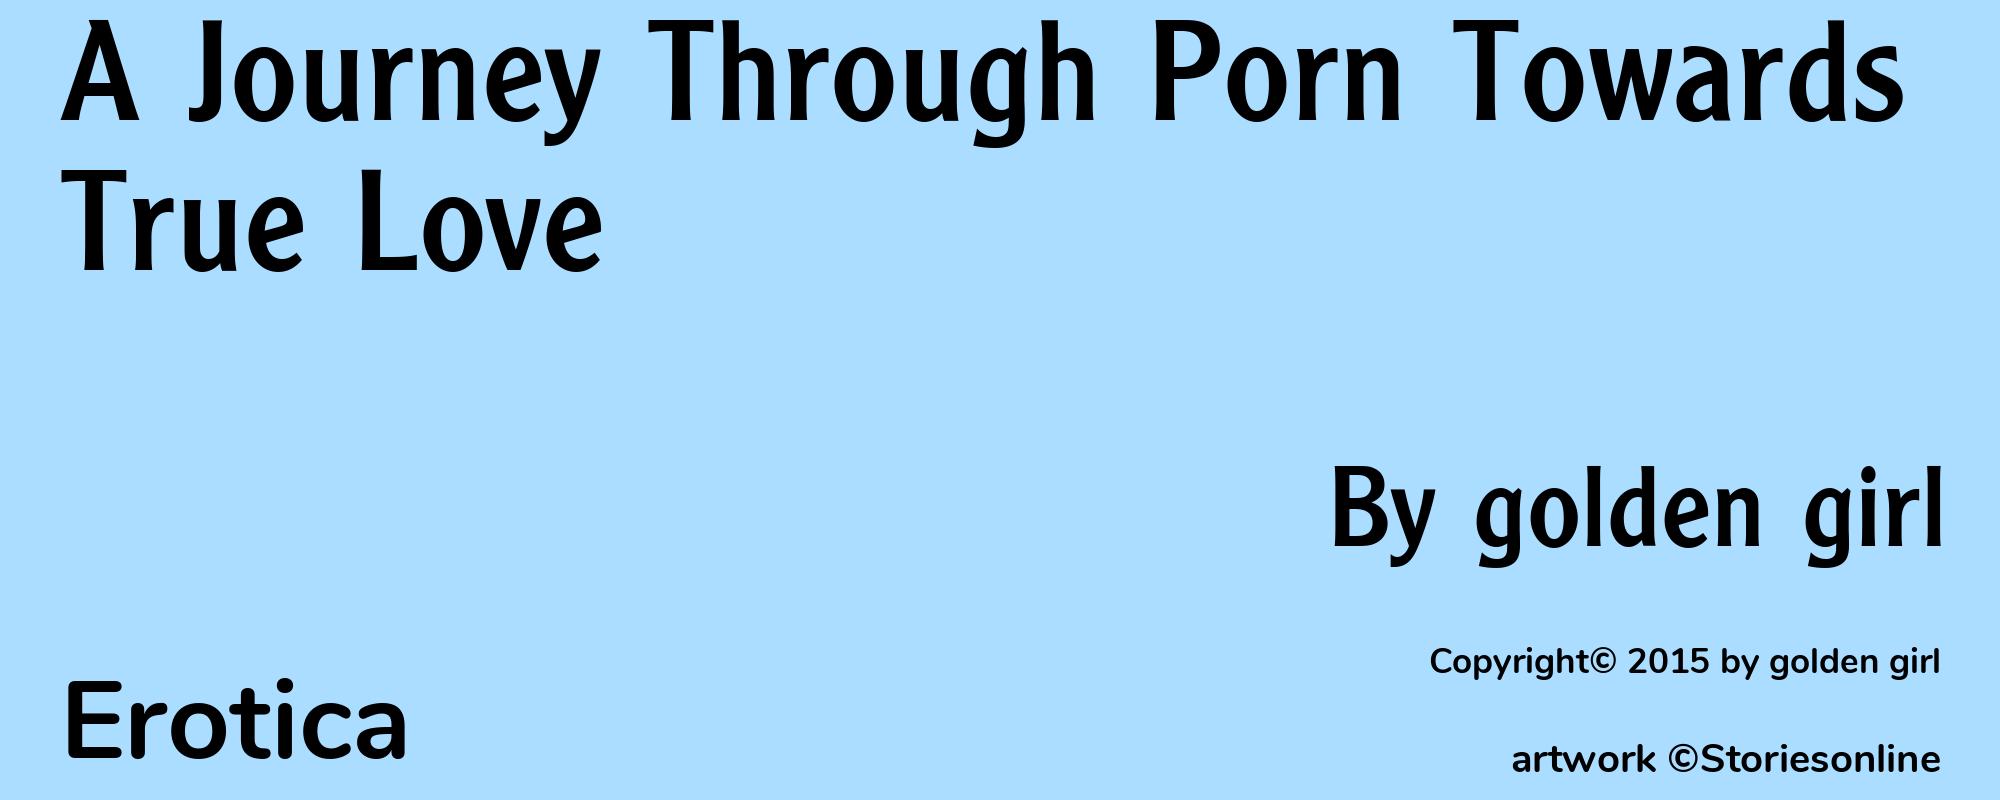 A Journey Through Porn Towards True Love - Cover